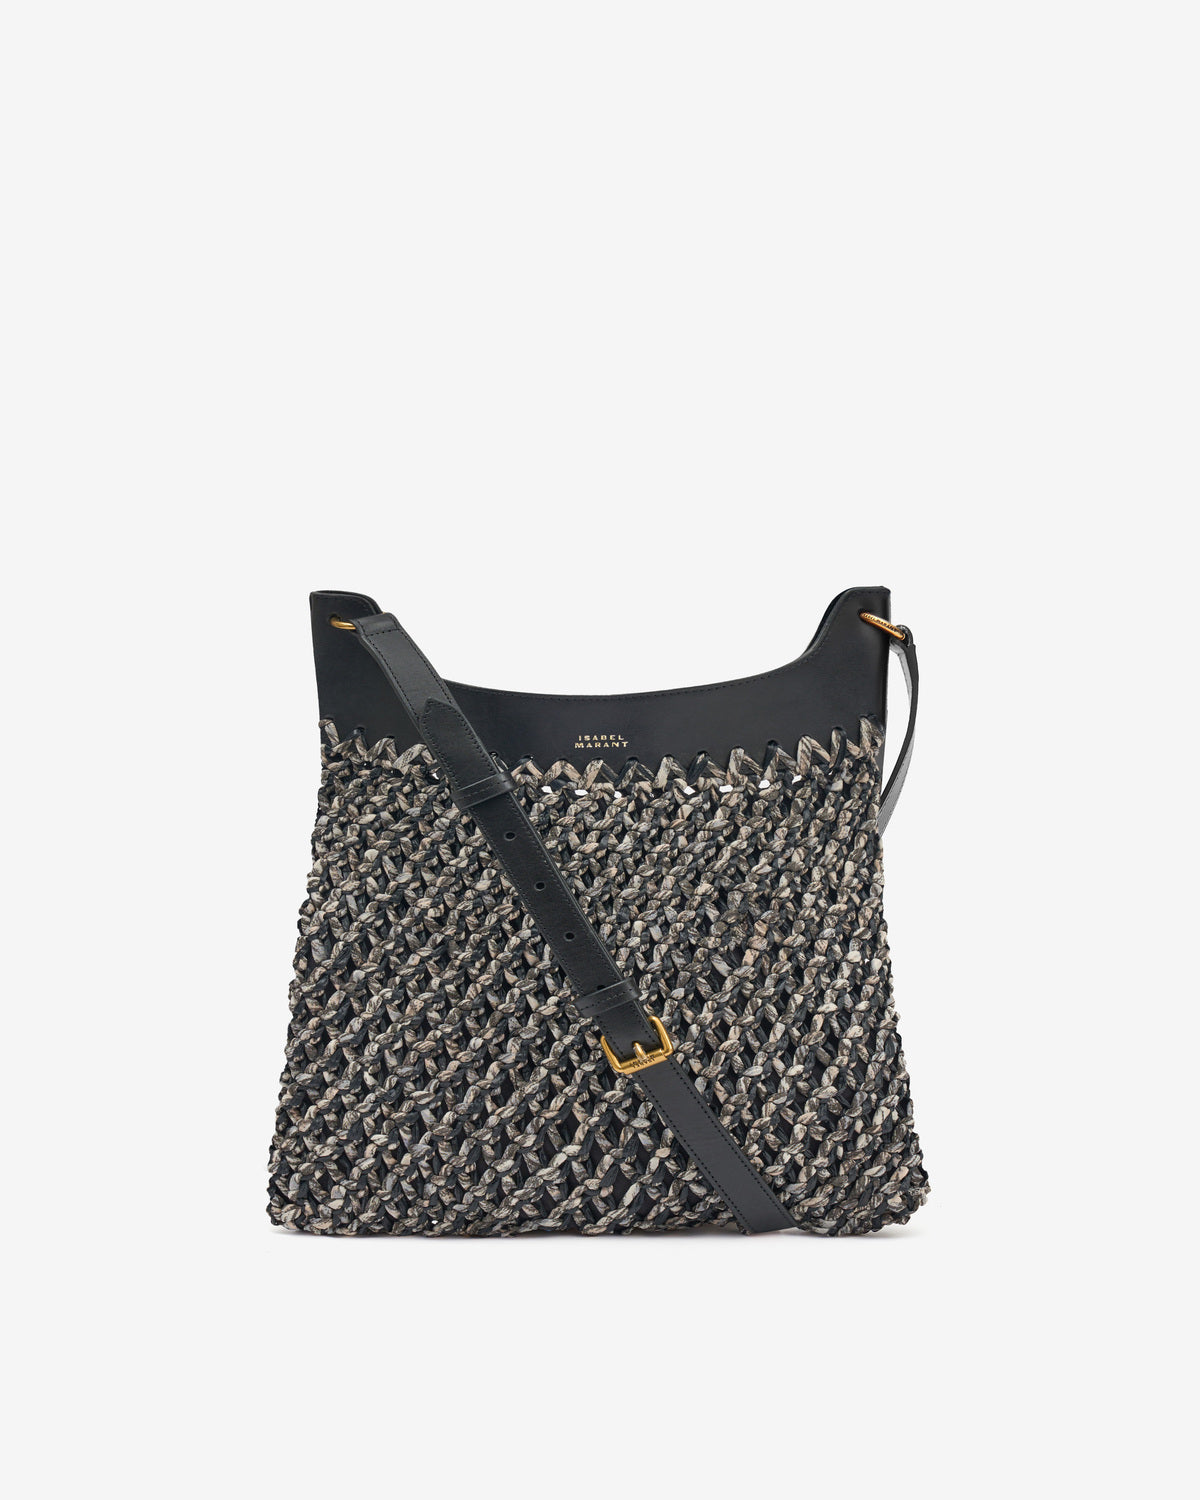 Amalfi hand-woven bag Woman Black 1